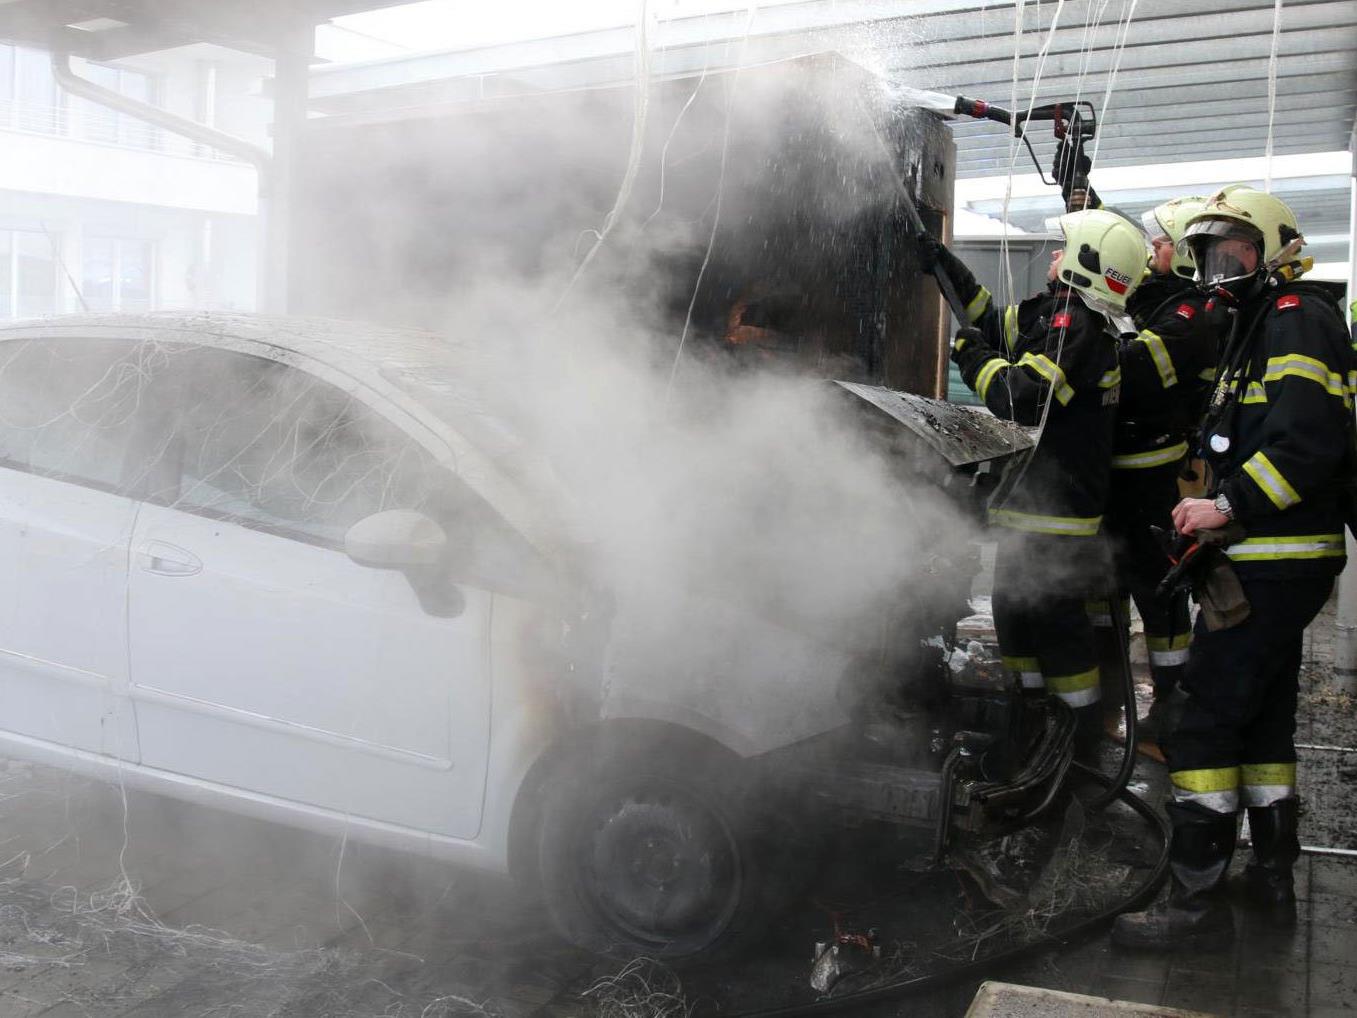 Warum das Auto unter den Carport zu brennen begann, ist unklar.